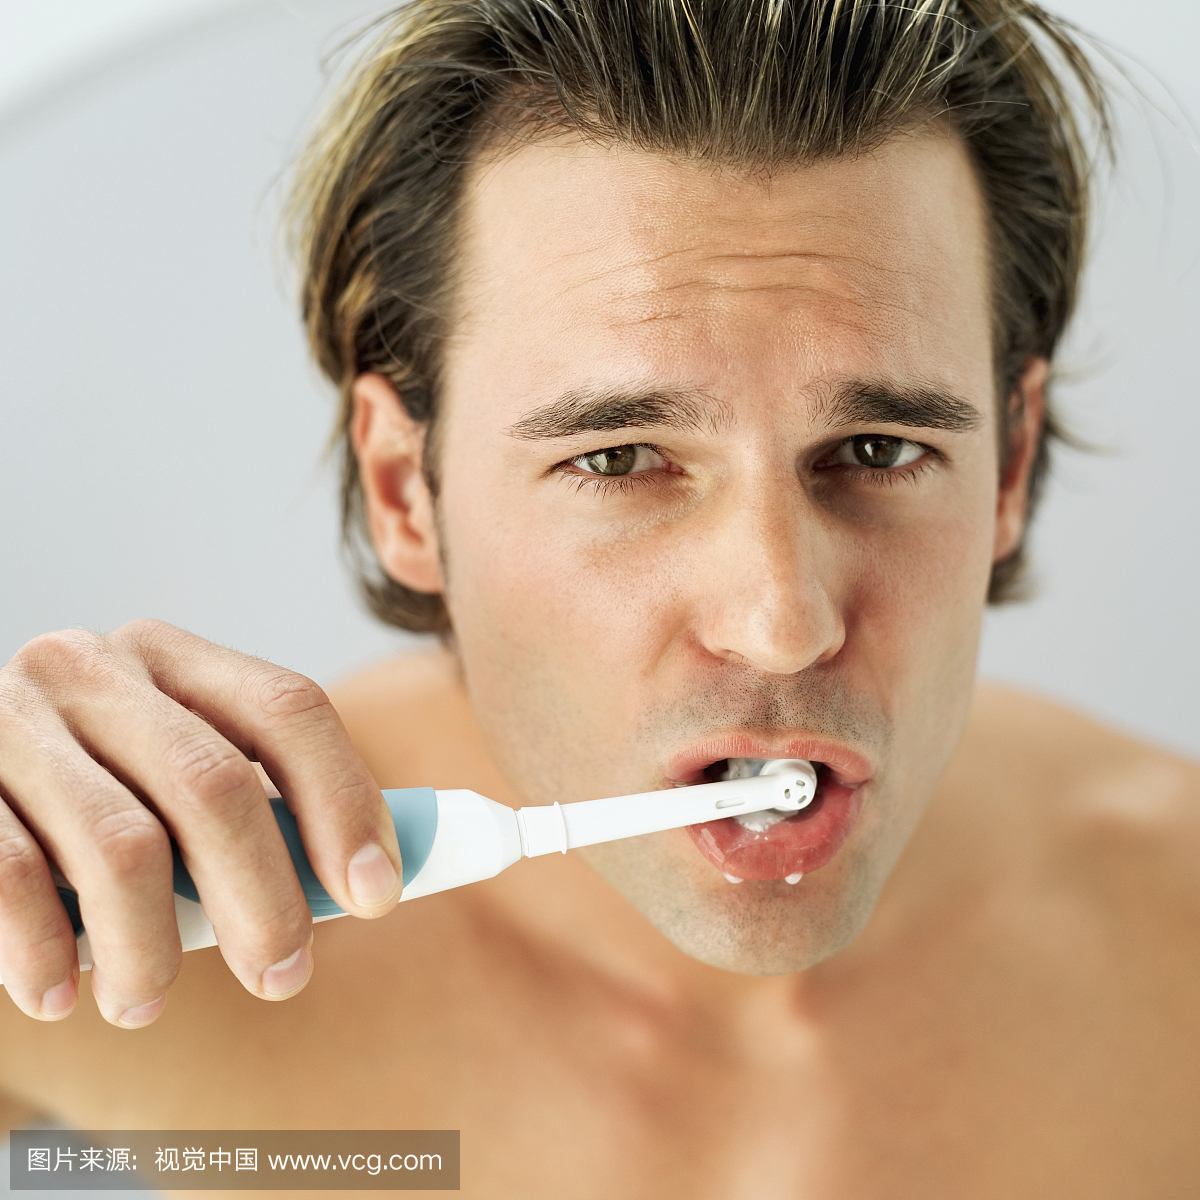 用电动牙刷刷牙的年轻人的肖像